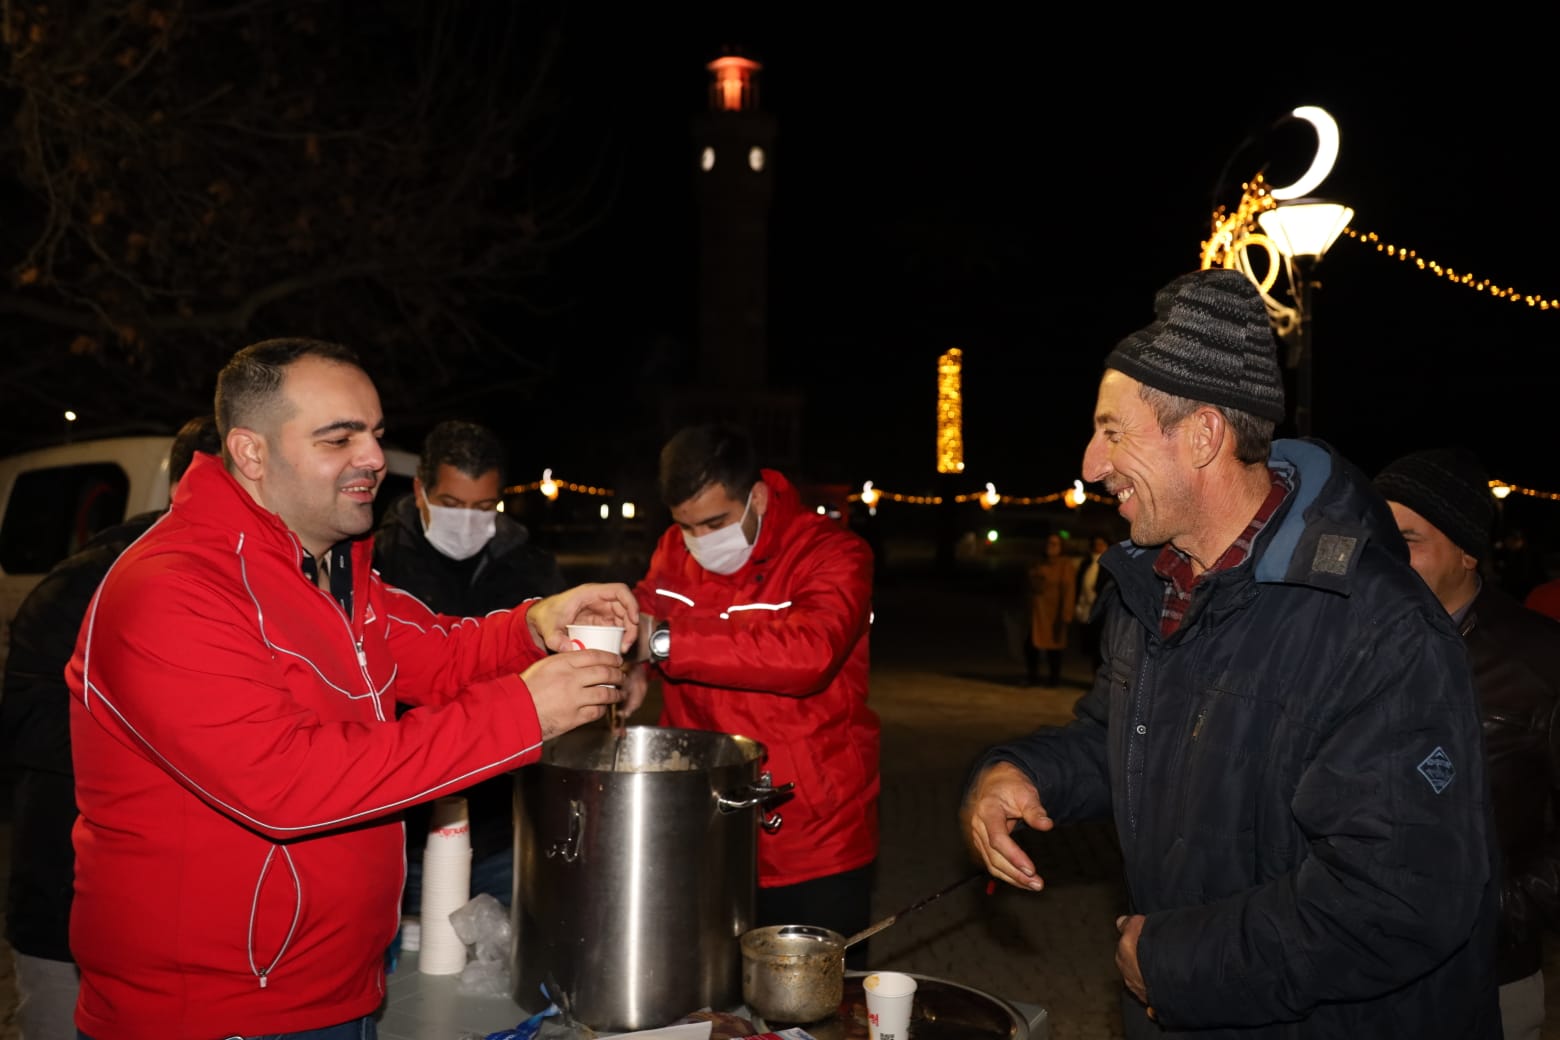 çorba Kızılay Konak Şubesi, haftanın üç günü çorba dağıtımı gerçekleştiriyor. Şube Başkanı Melih Bingöl, “Bu çorba dağıtımı her gün yapmak istiyoruz” dedi.